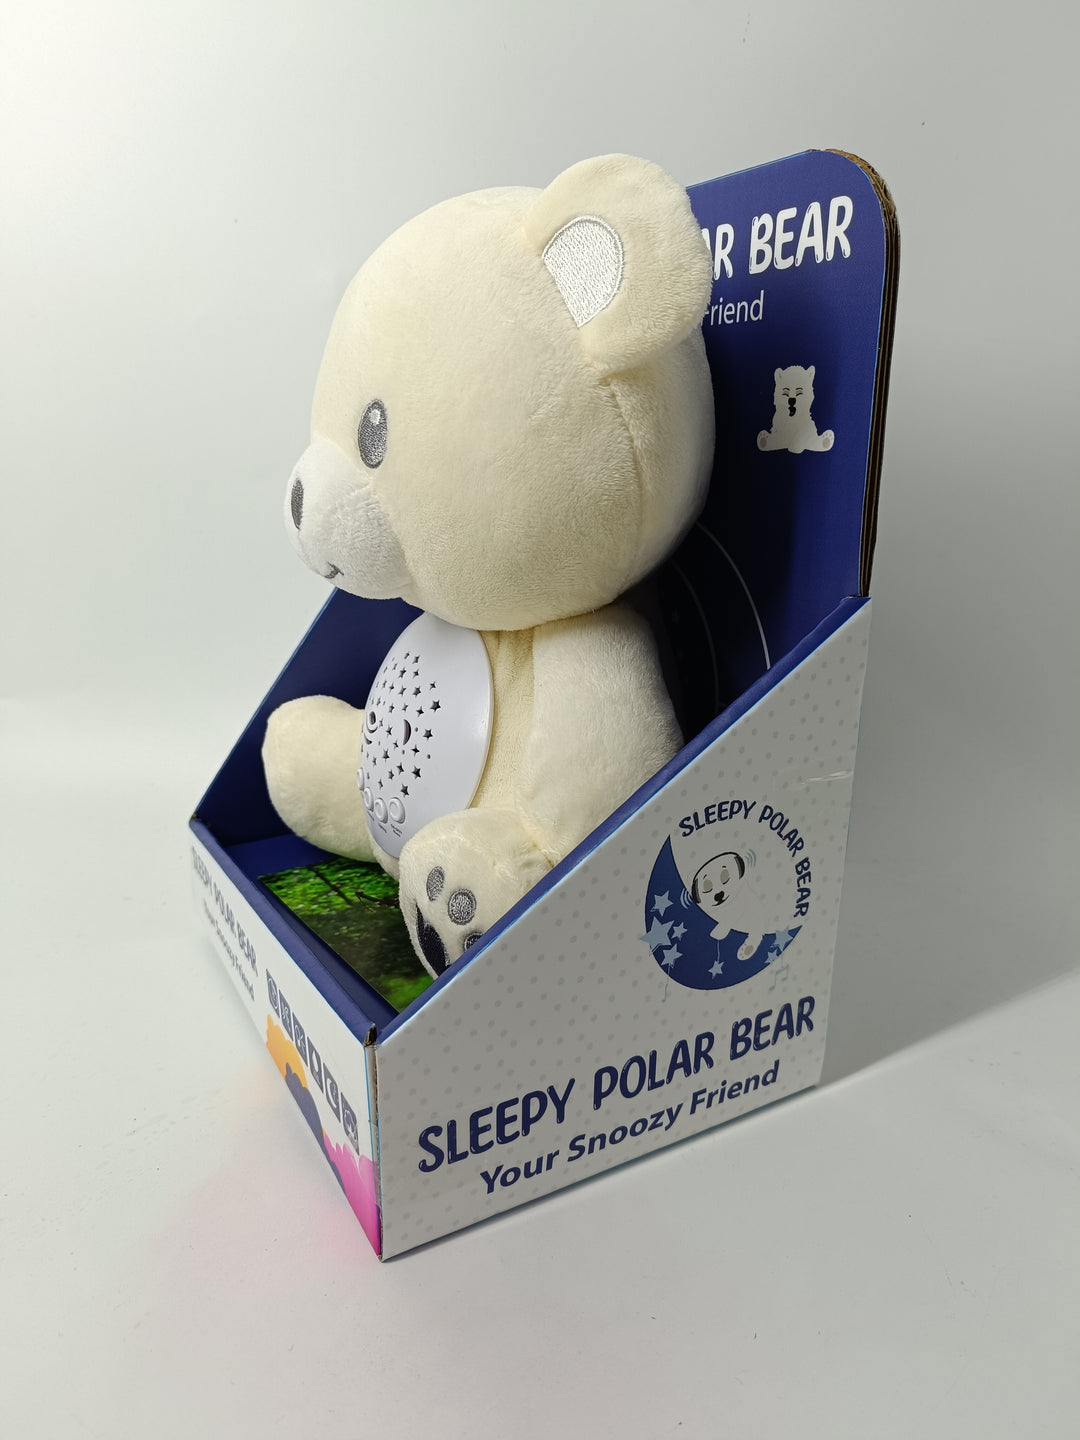 Sleepy Polar Bear Your Snoozy Friend (with sound & light)